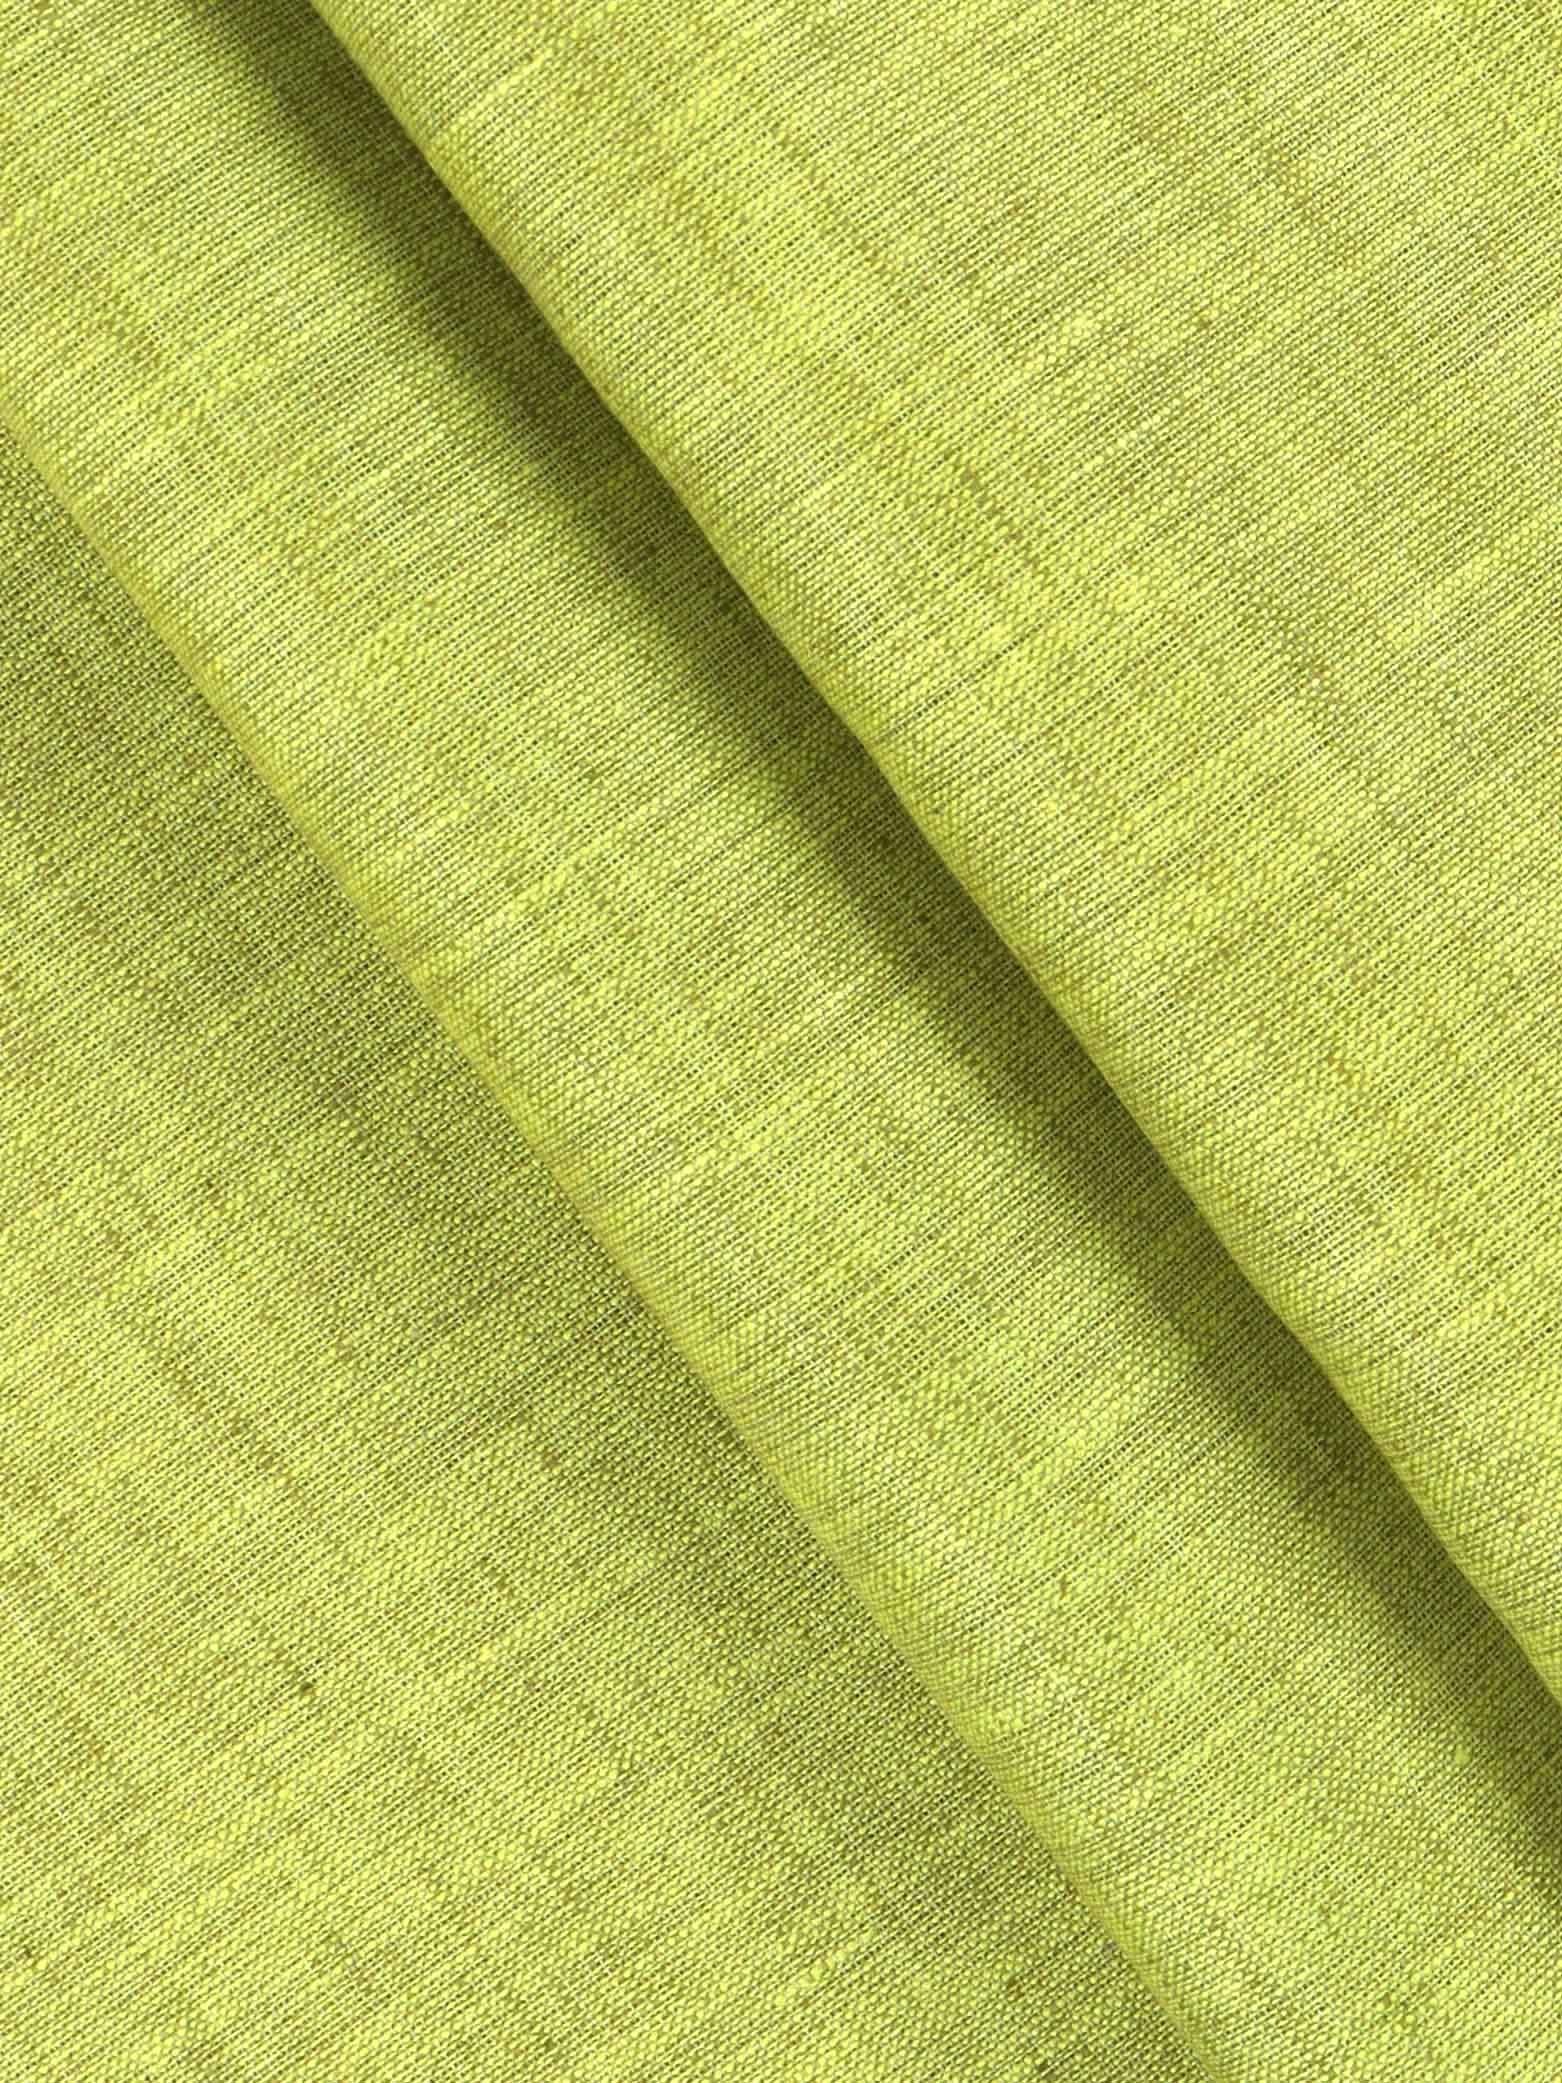 Cotton Blend Green Colour Kurtha Fabric Lampus - APC1106-5